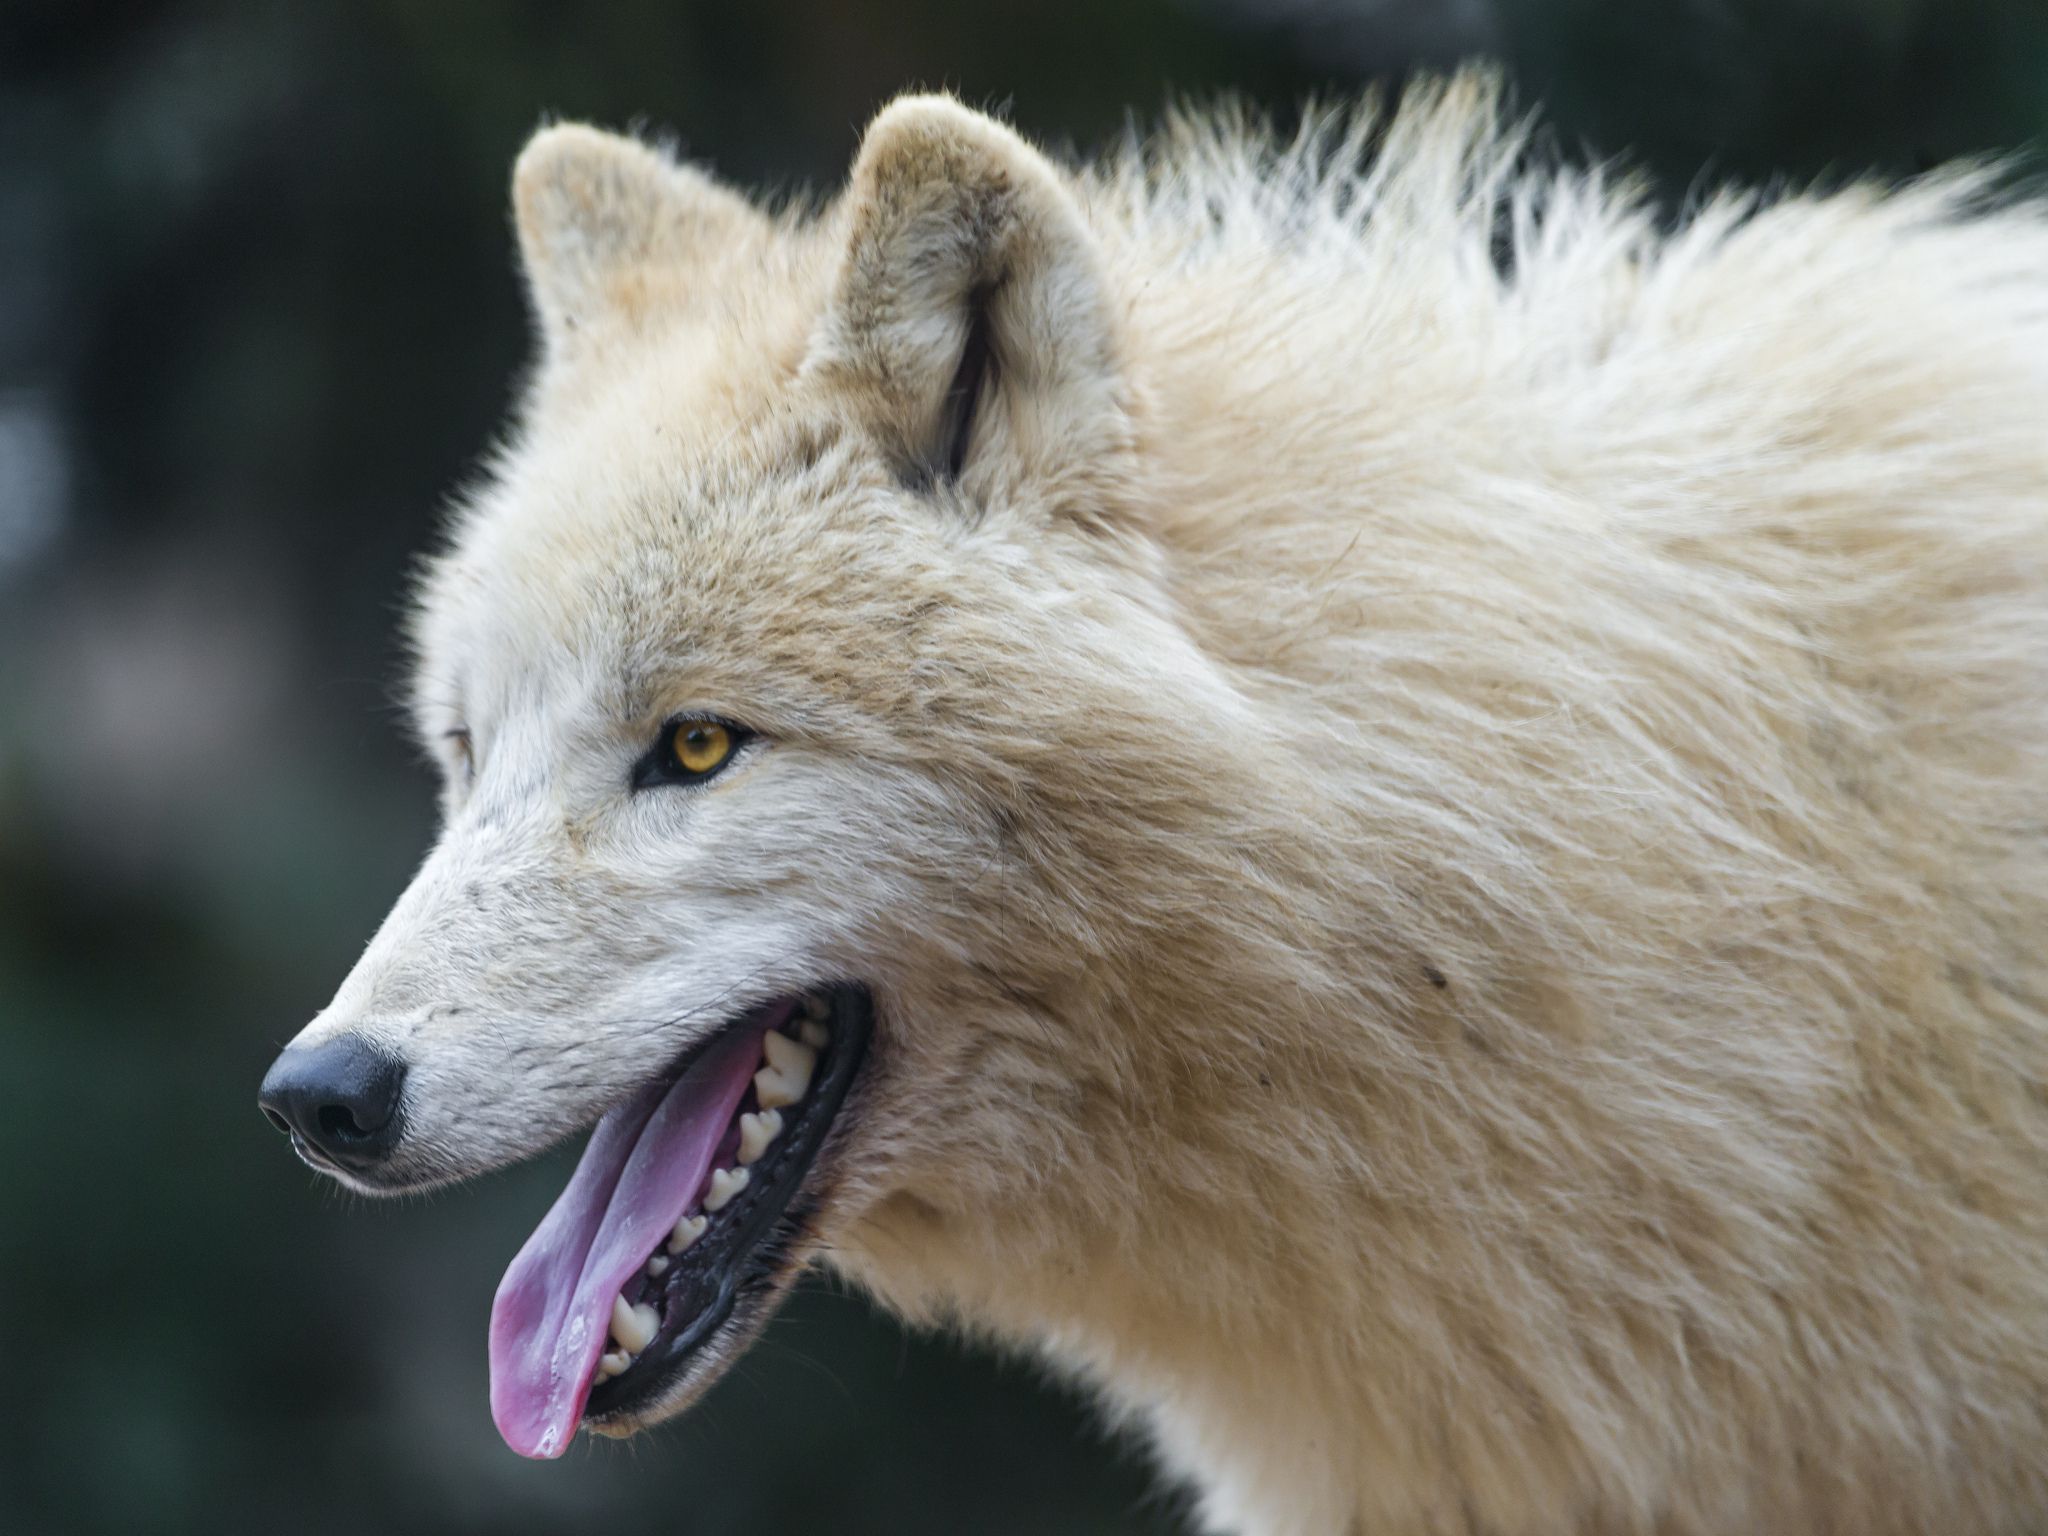 arktischer wolf tapete,canis lupus tundrarum,tierwelt,wolf,schnauze,landtier